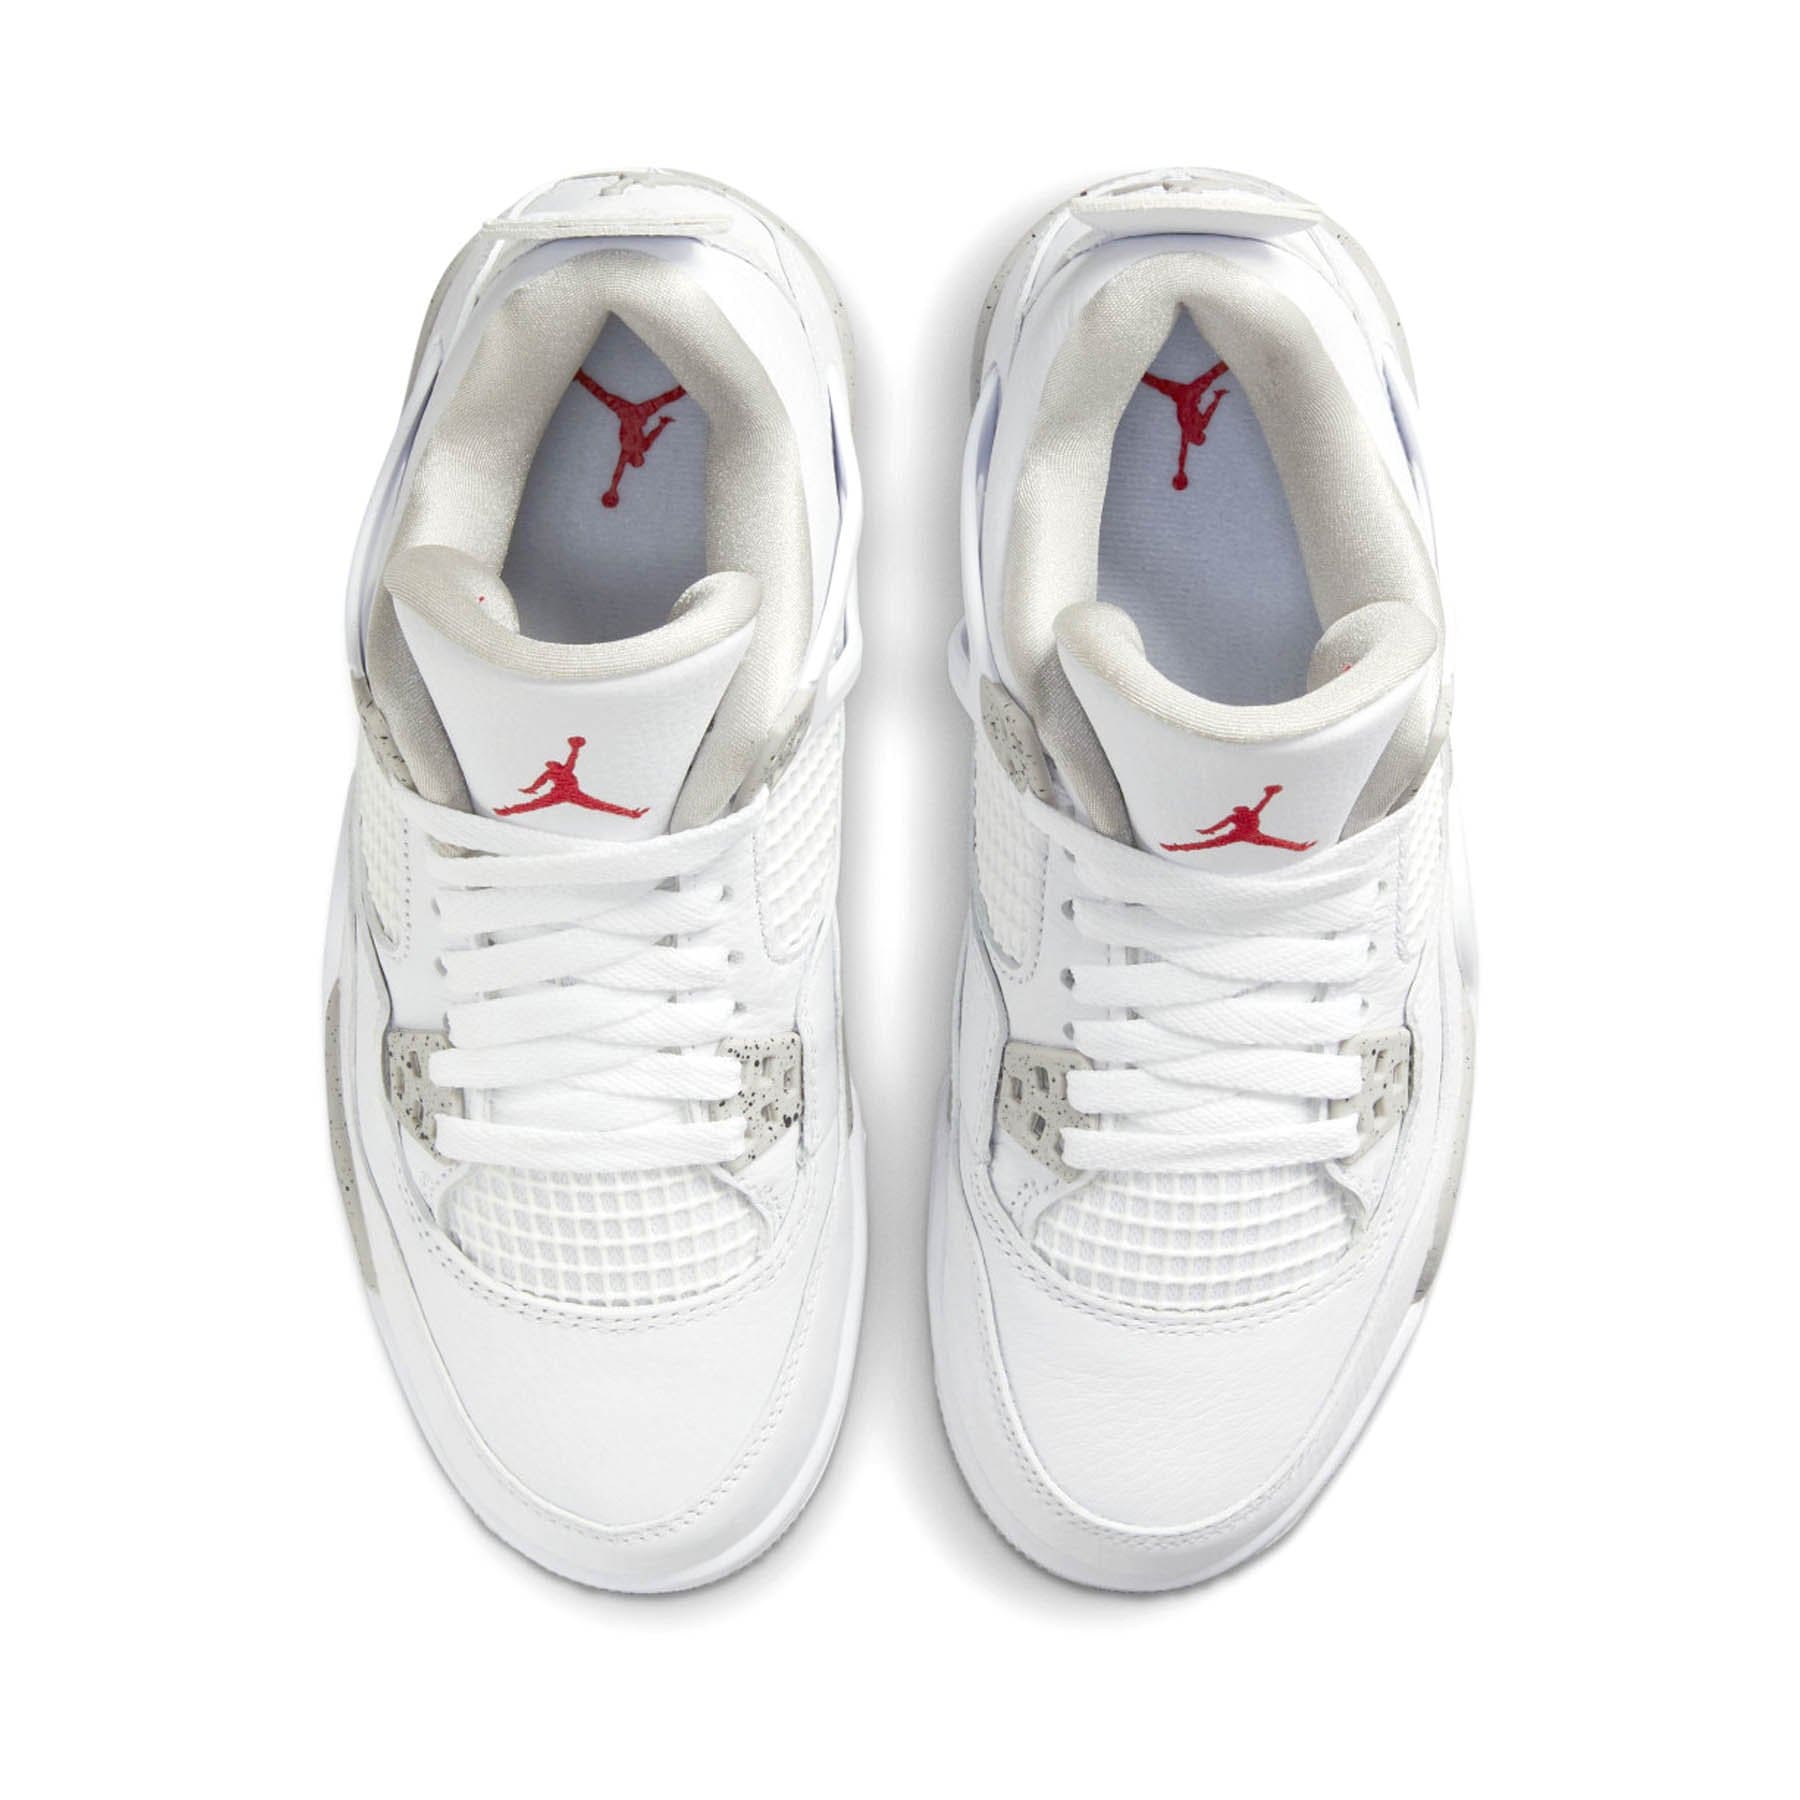 Double Boxed  499.99 Nike Air Jordan 4 Retro White Oreo Double Boxed